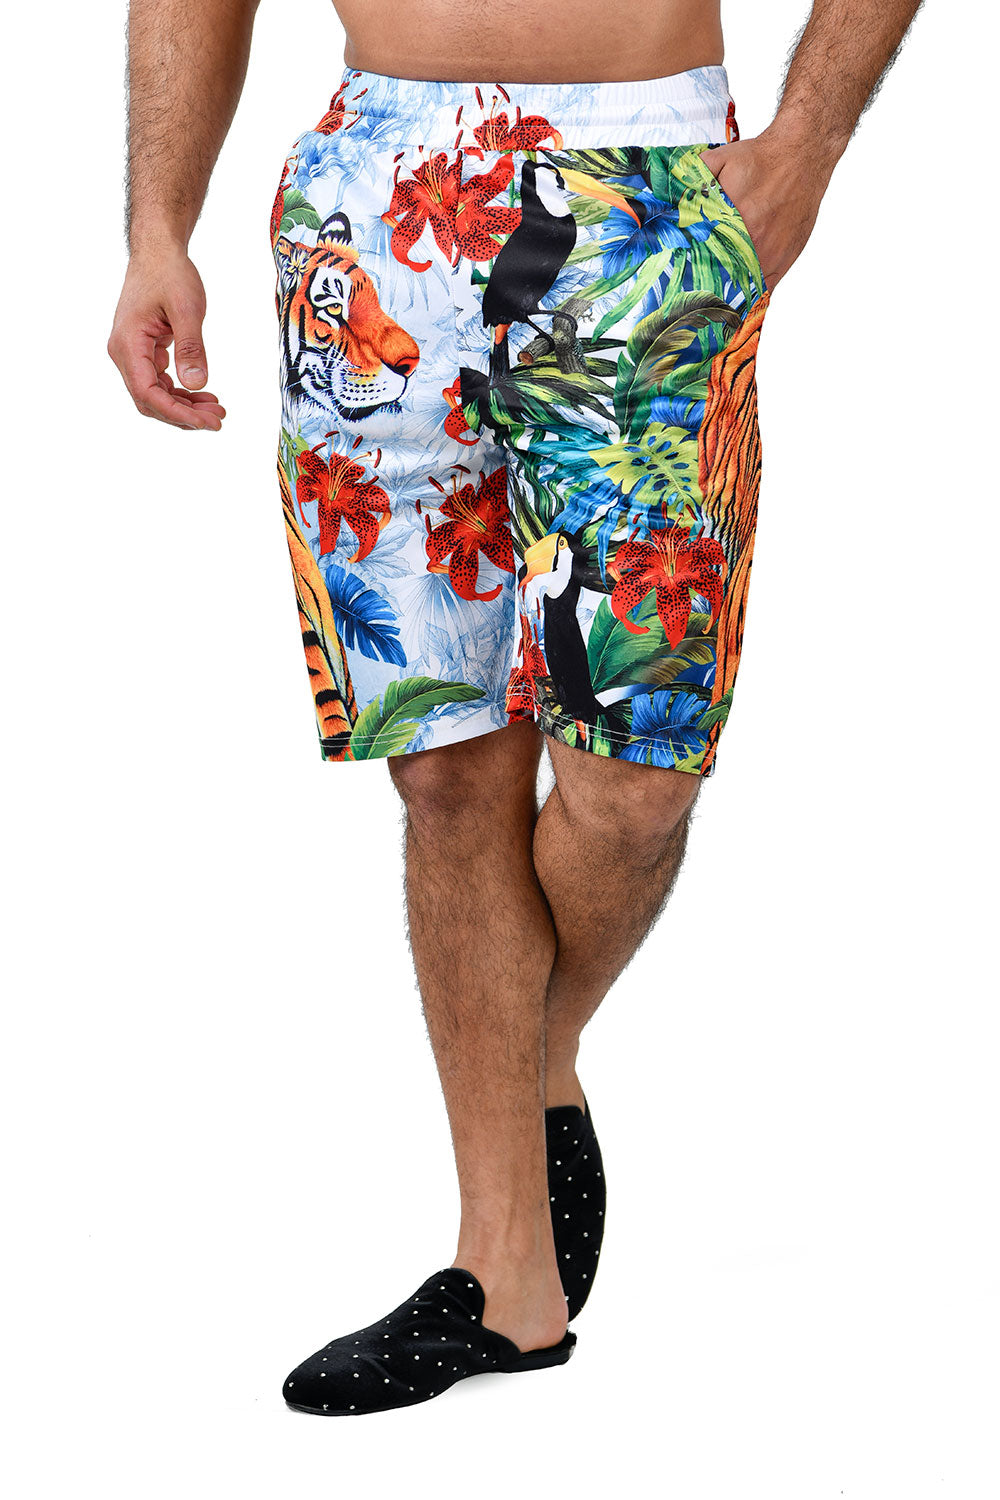 barabas summer printed floral shorts - alwaysspecialgifts.com